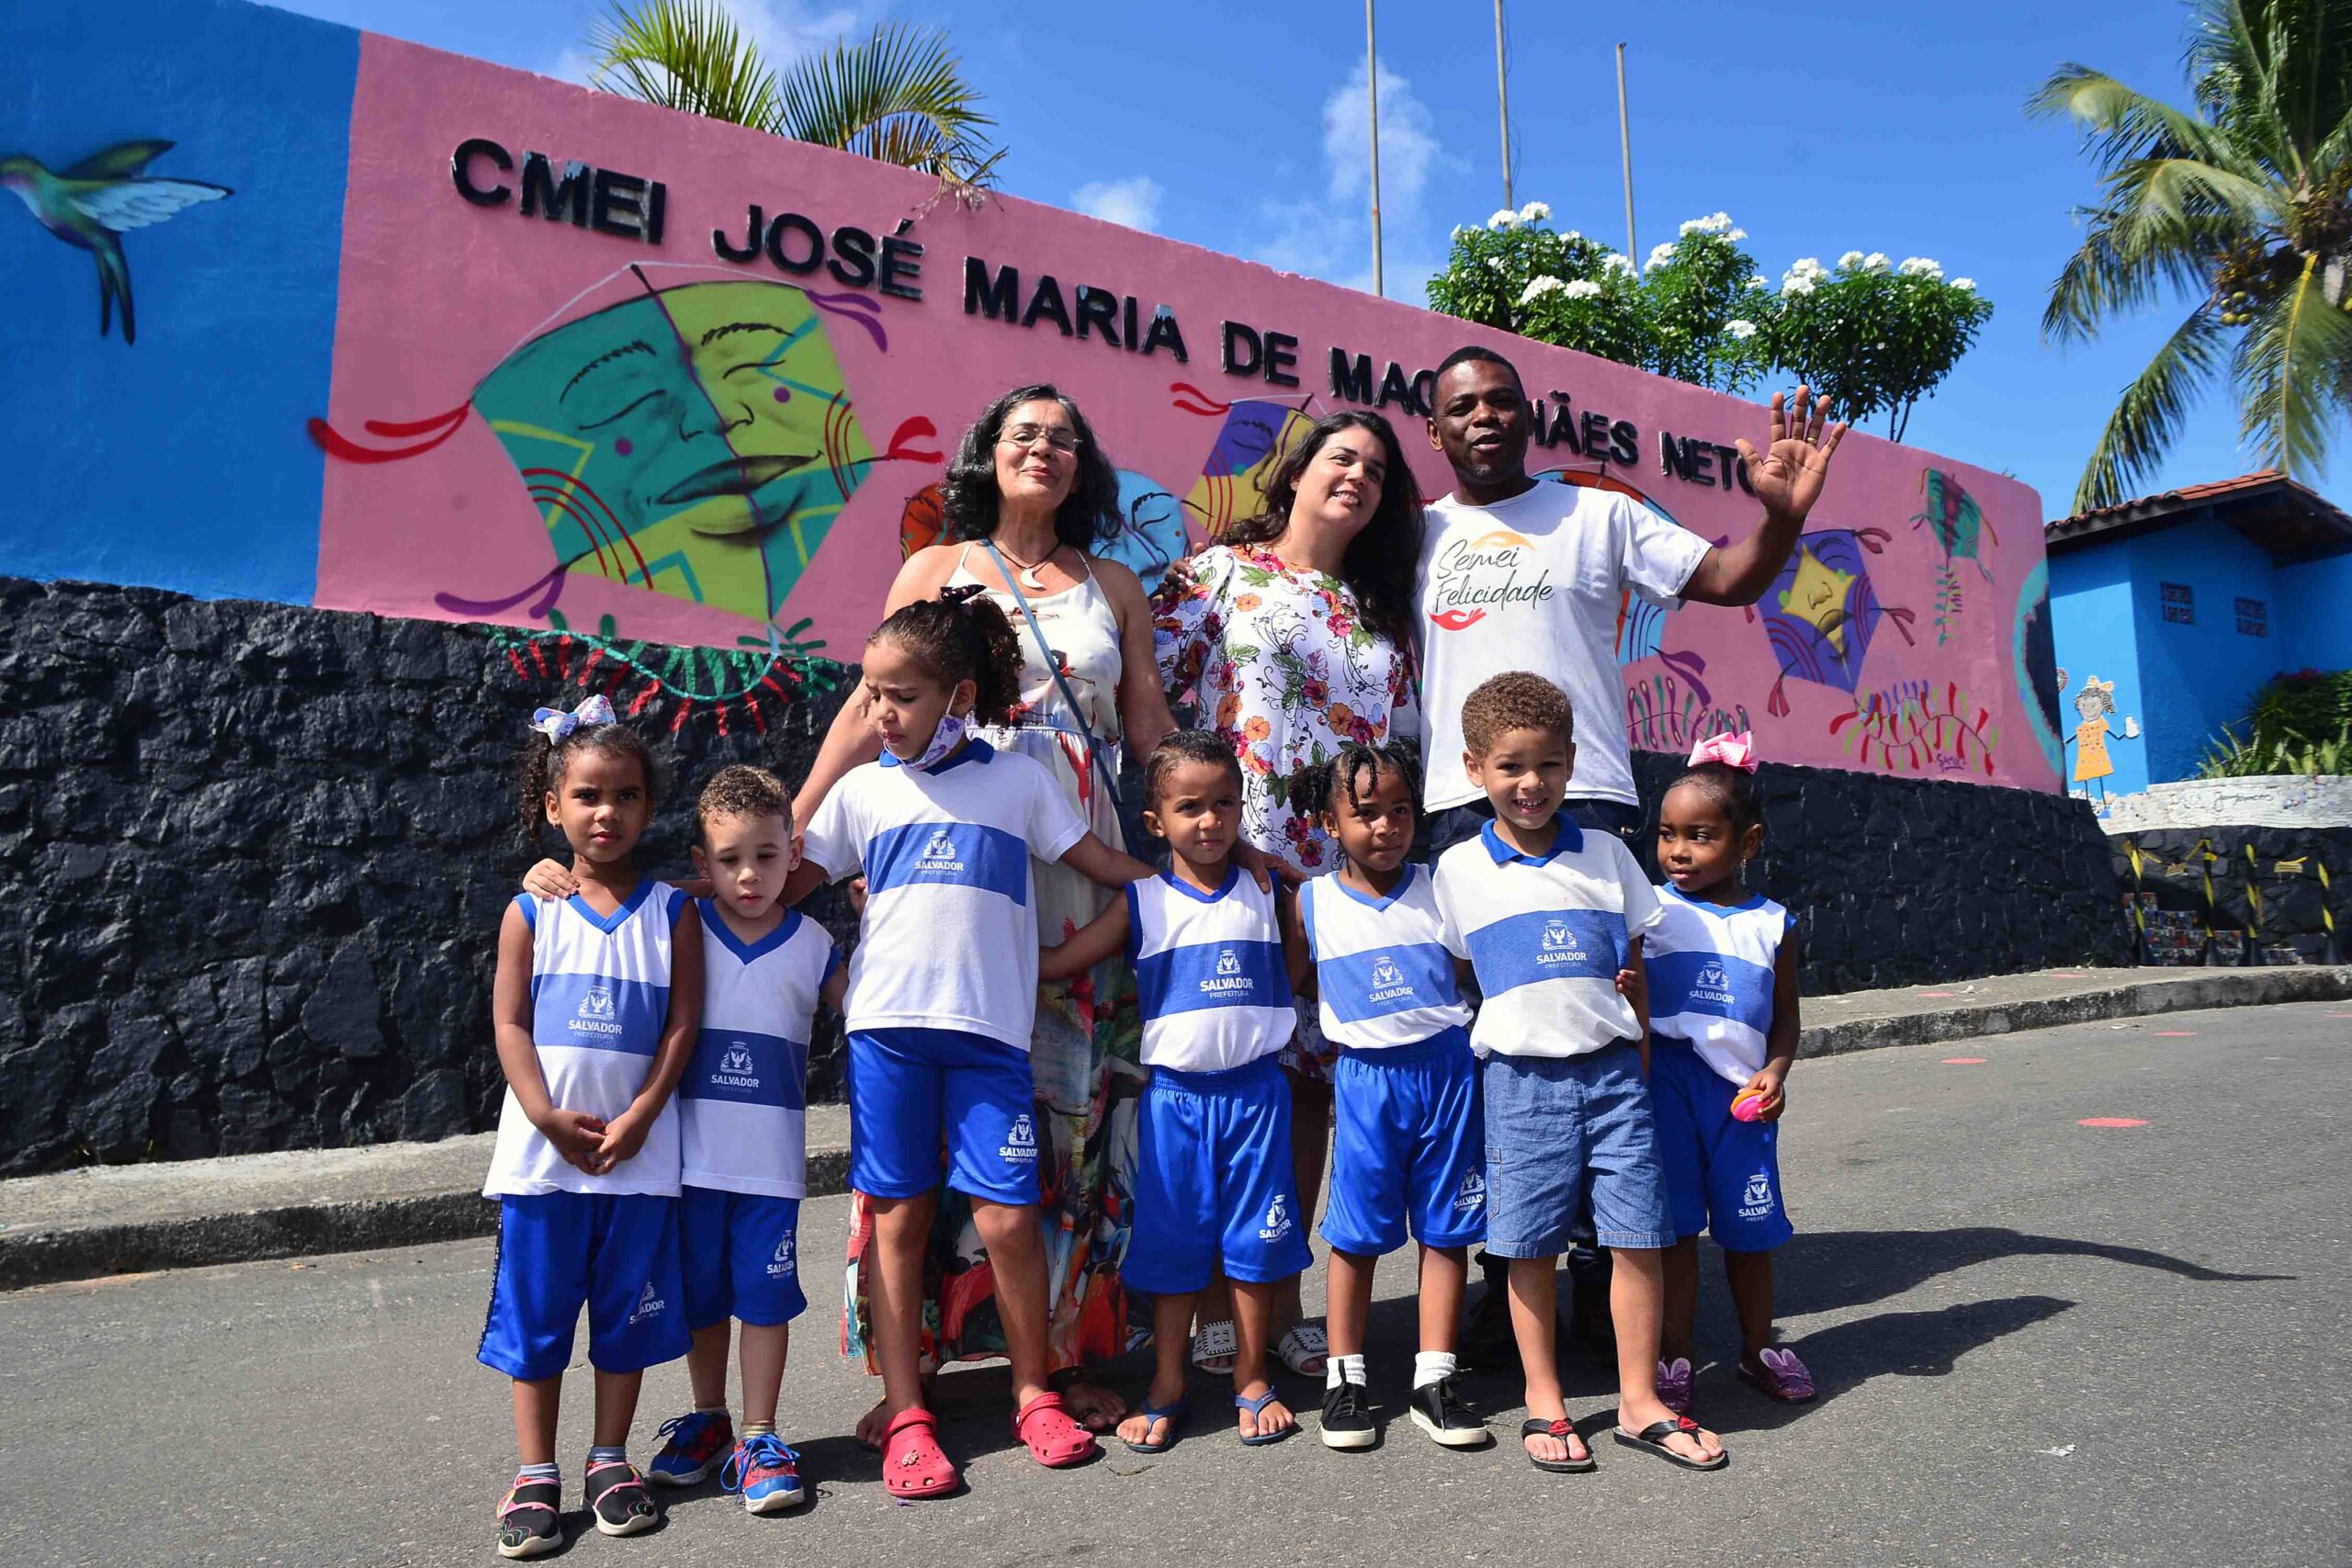 Cmei em Pituaçu ganha arte em grafite produzida pela comunidade